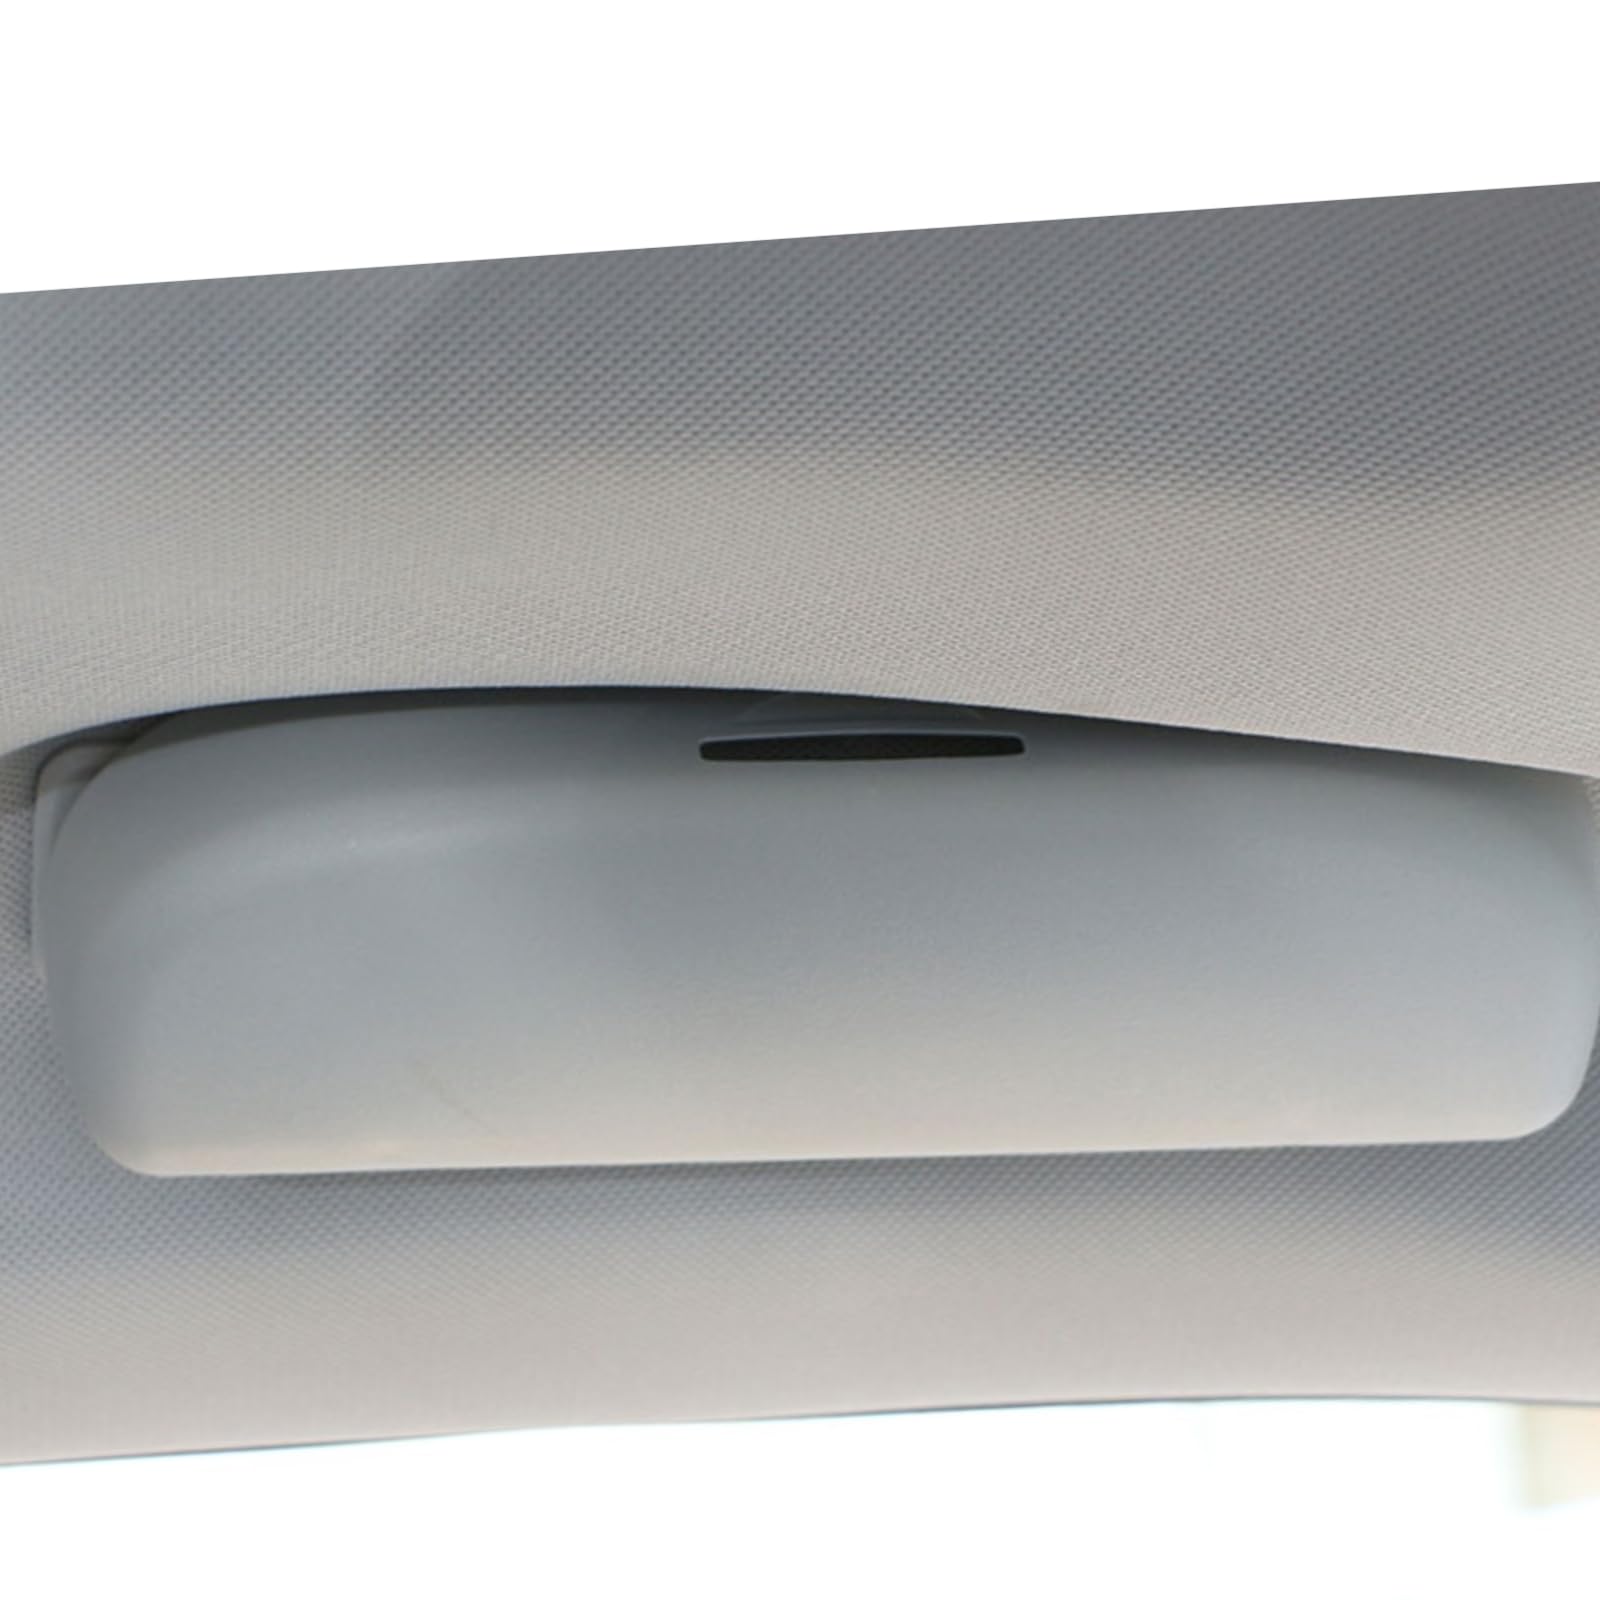 Für Peugeot 206 207 308 407 408 508 2008 301 3008 4008 2012-2016 Car Styling Car Front Sun Glasses Case Box Auto Decoration von YAZOLAS